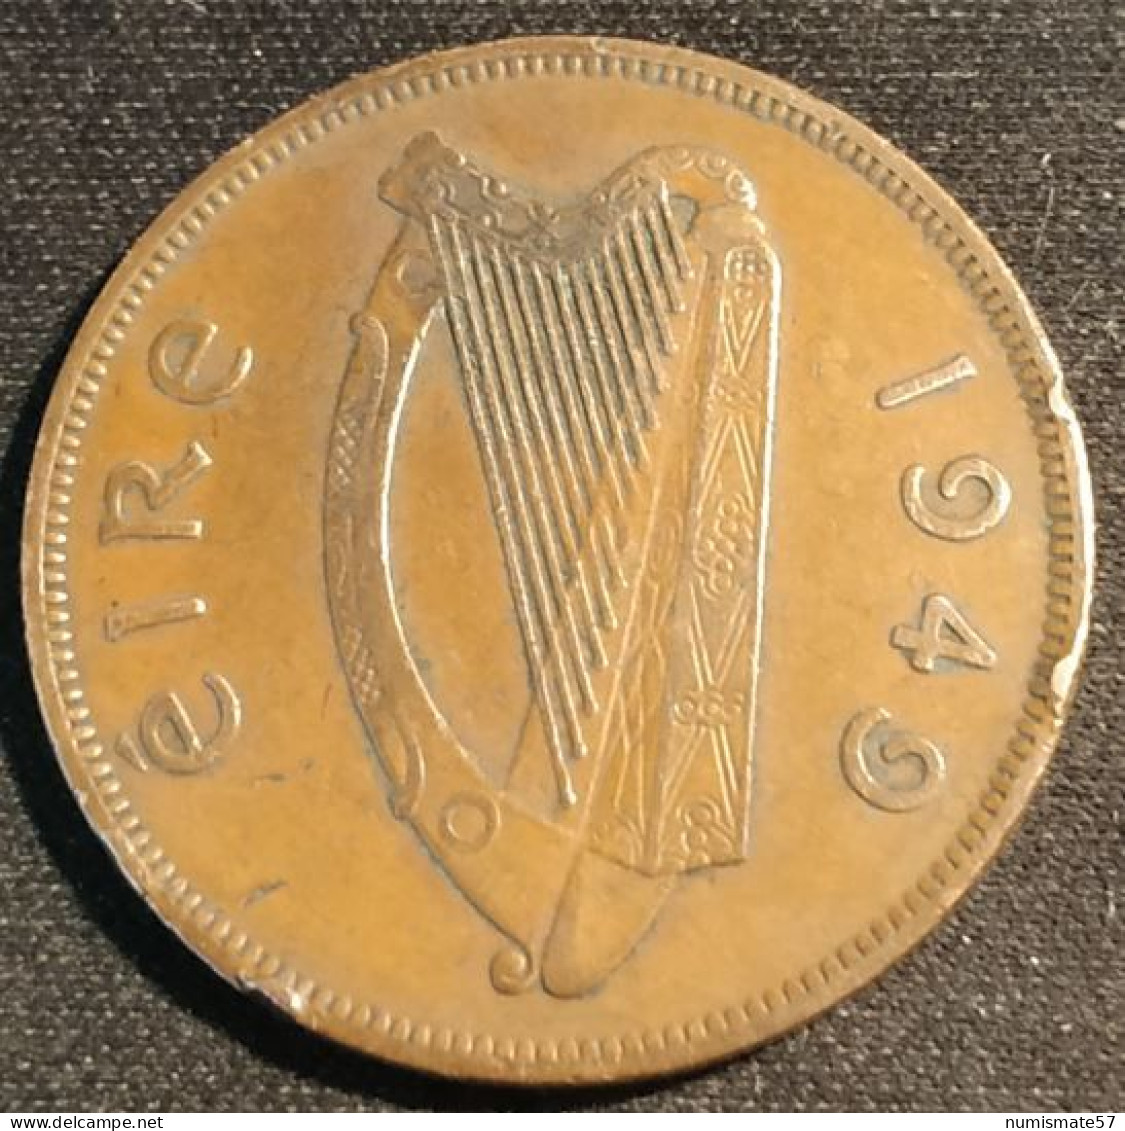 IRLANDE - EIRE - 1 PINGIN 1949 - KM 11 - PENNY - IRELAND - Ireland